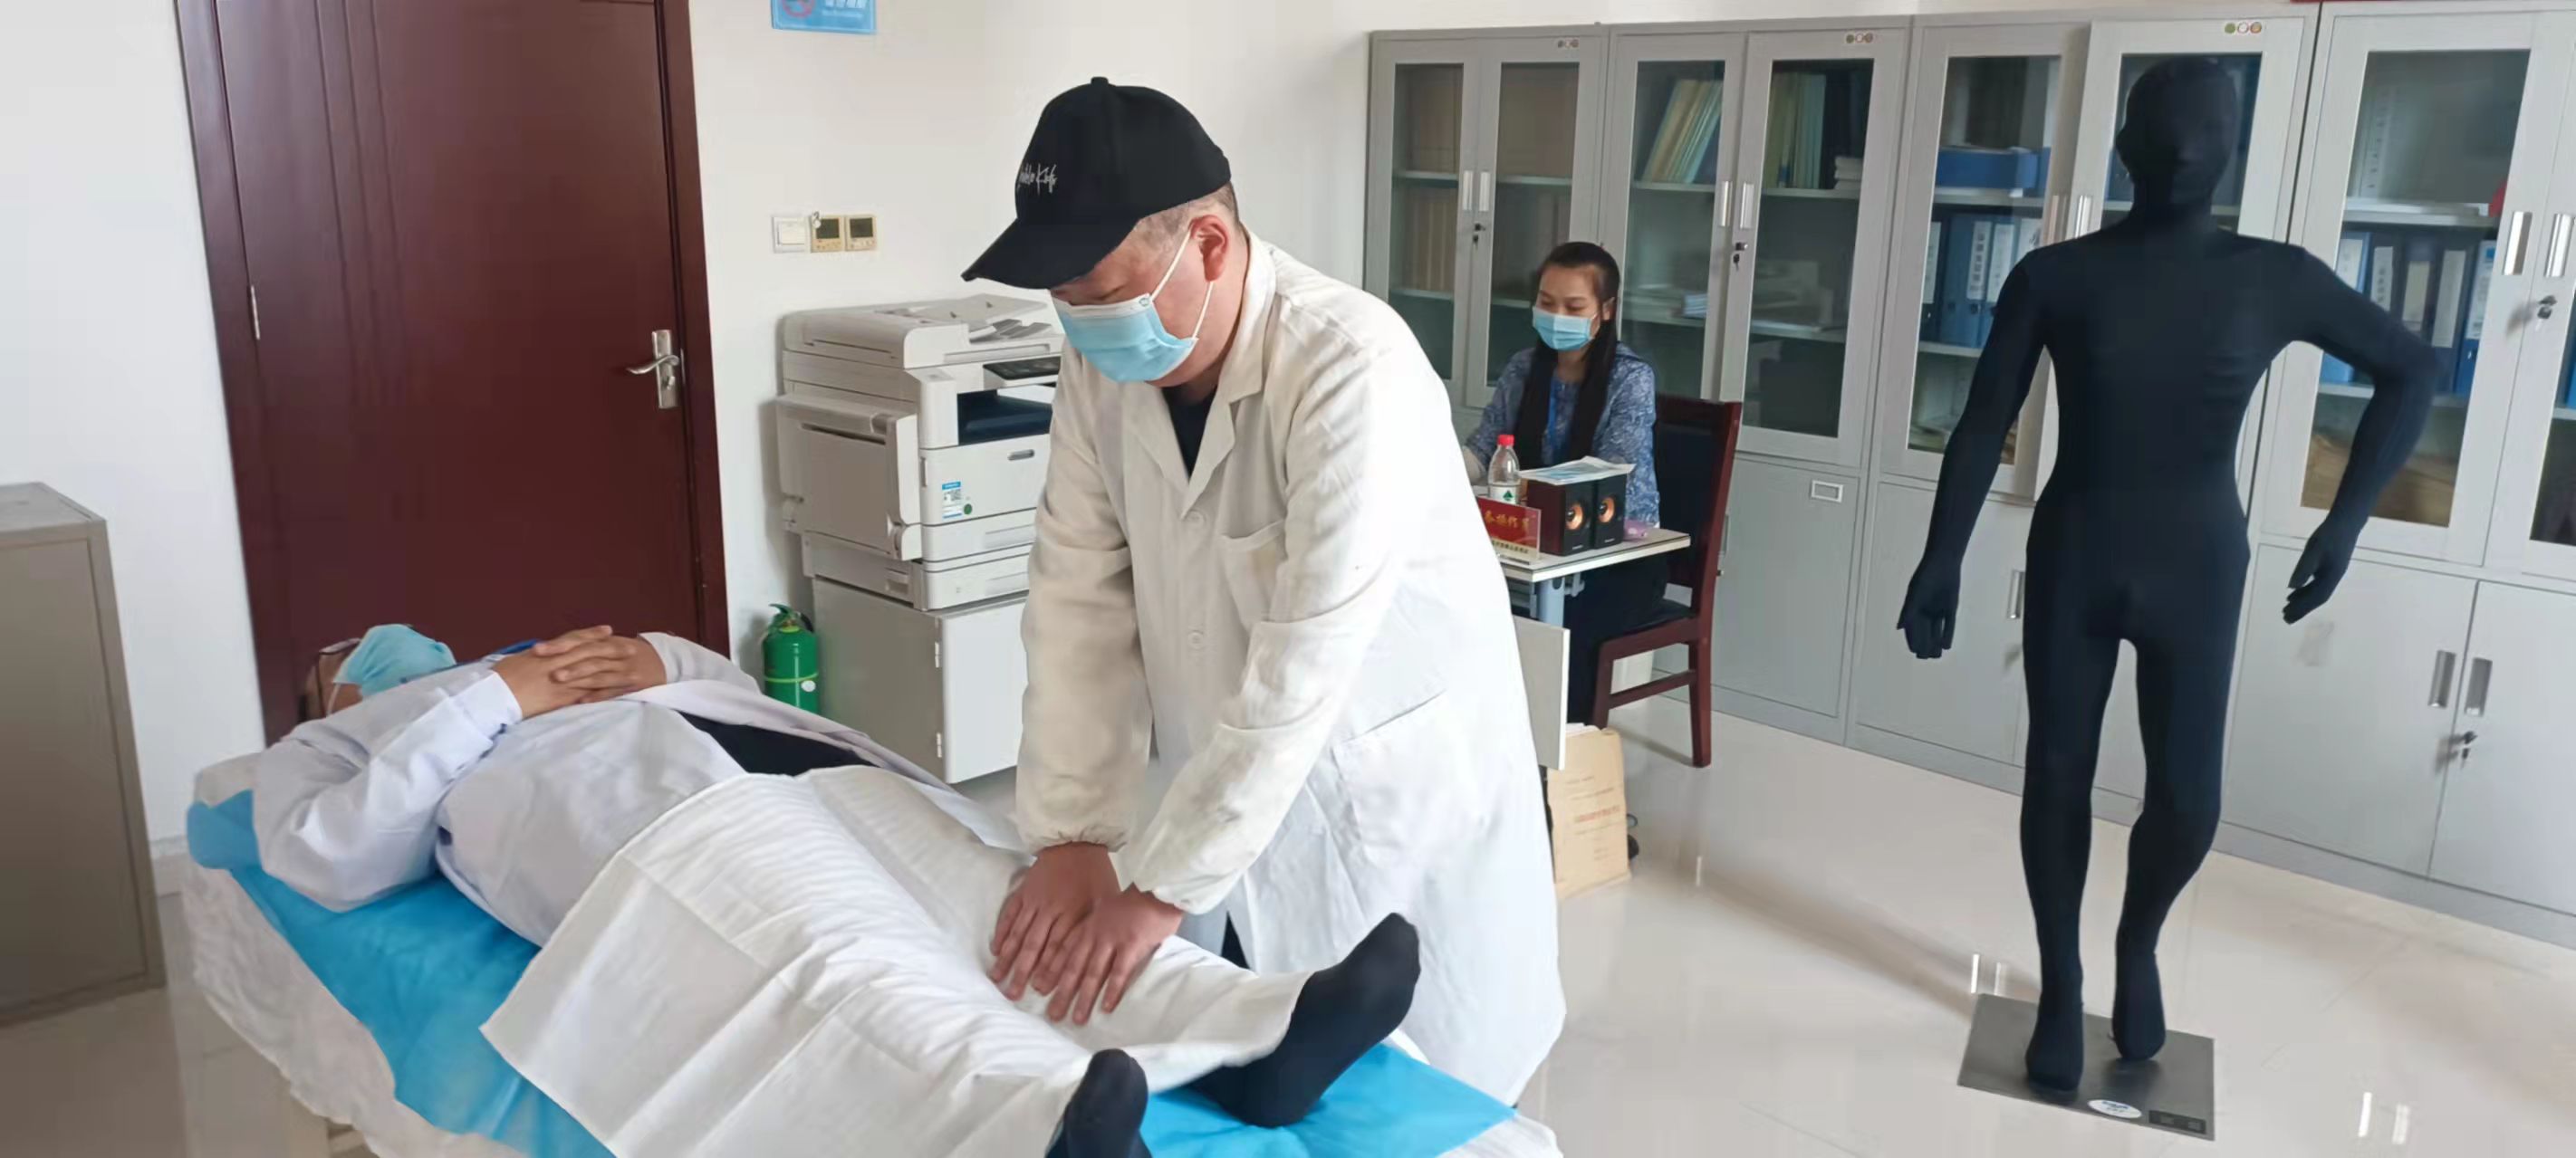 2021年全國盲人醫療按摩人員考試河南考區考試在鄭州開考